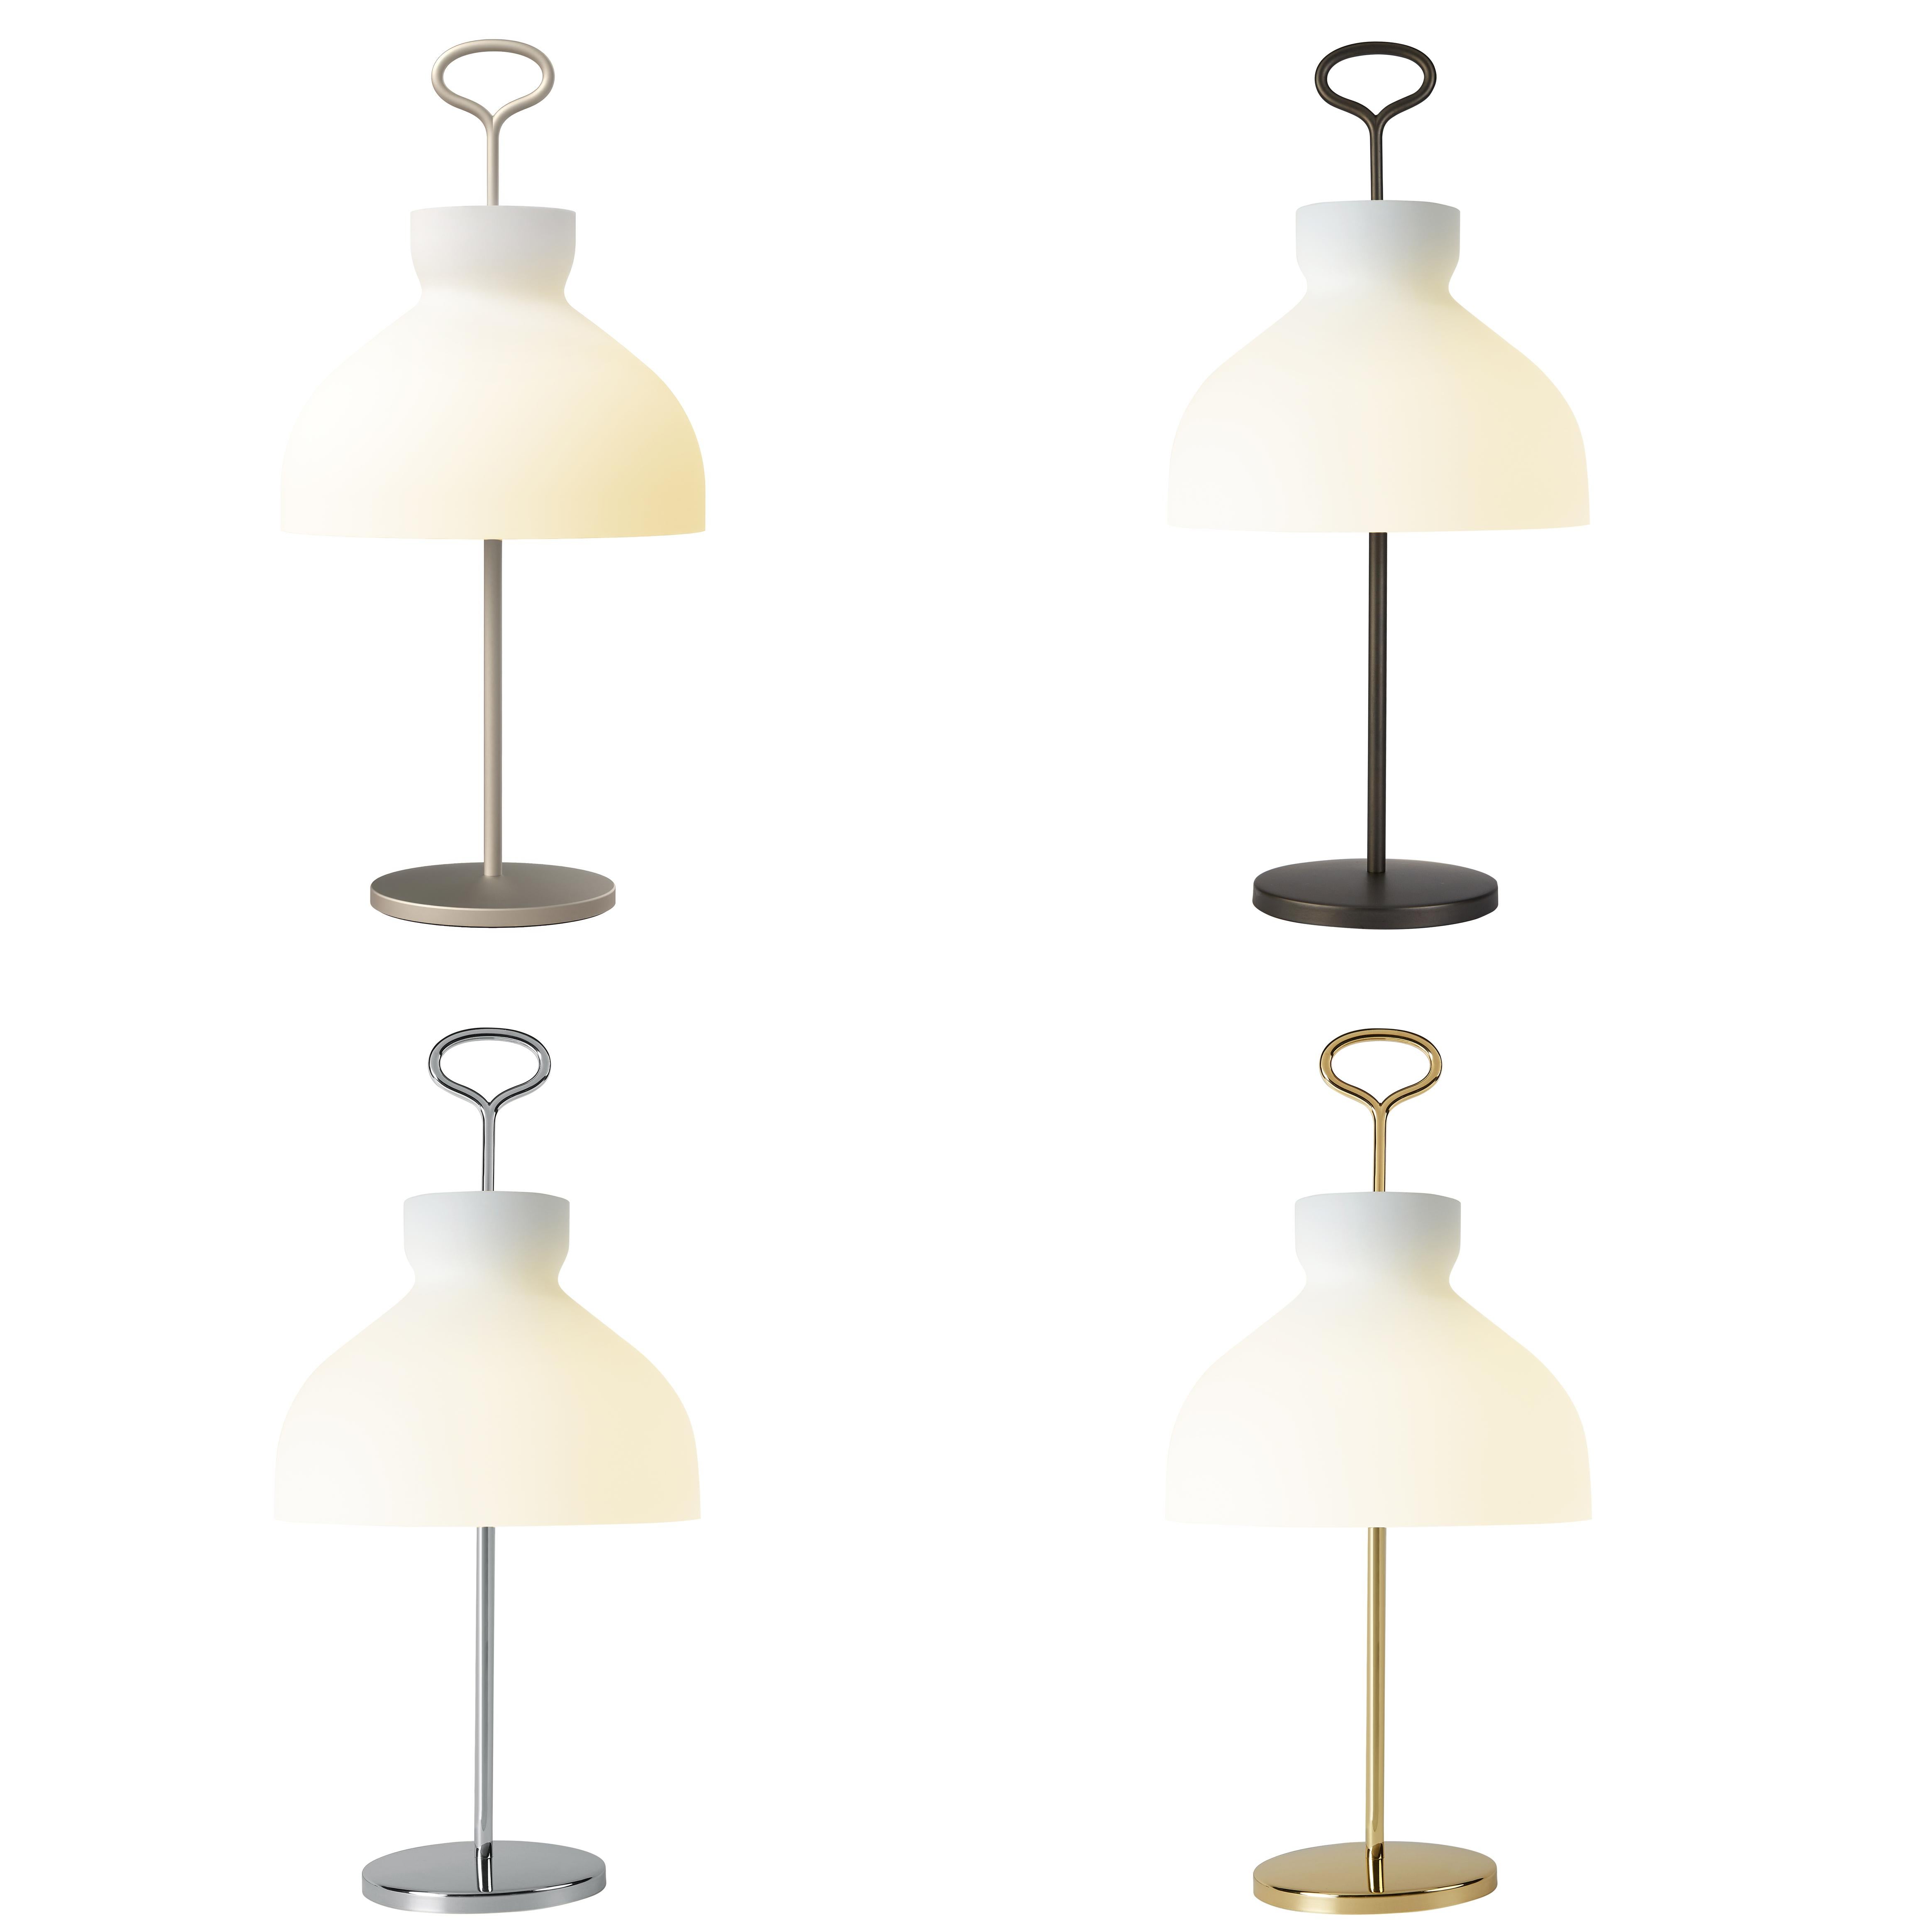 Large Ignazio Gardella 'Arenzano' Table Lamp in Brass and Glass for Tato Italia For Sale 2